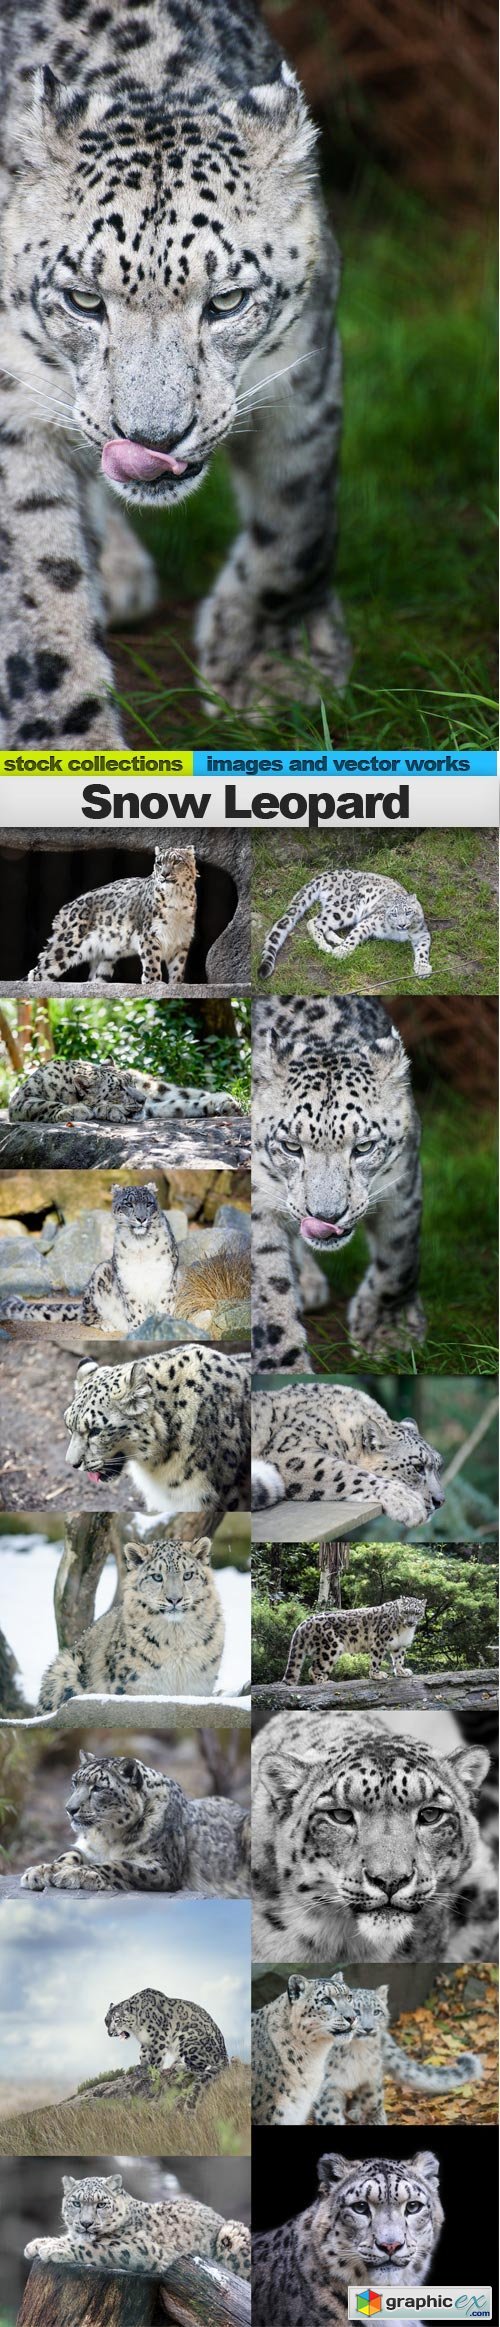 Snow Leopard, 15 x UHQ JPEG